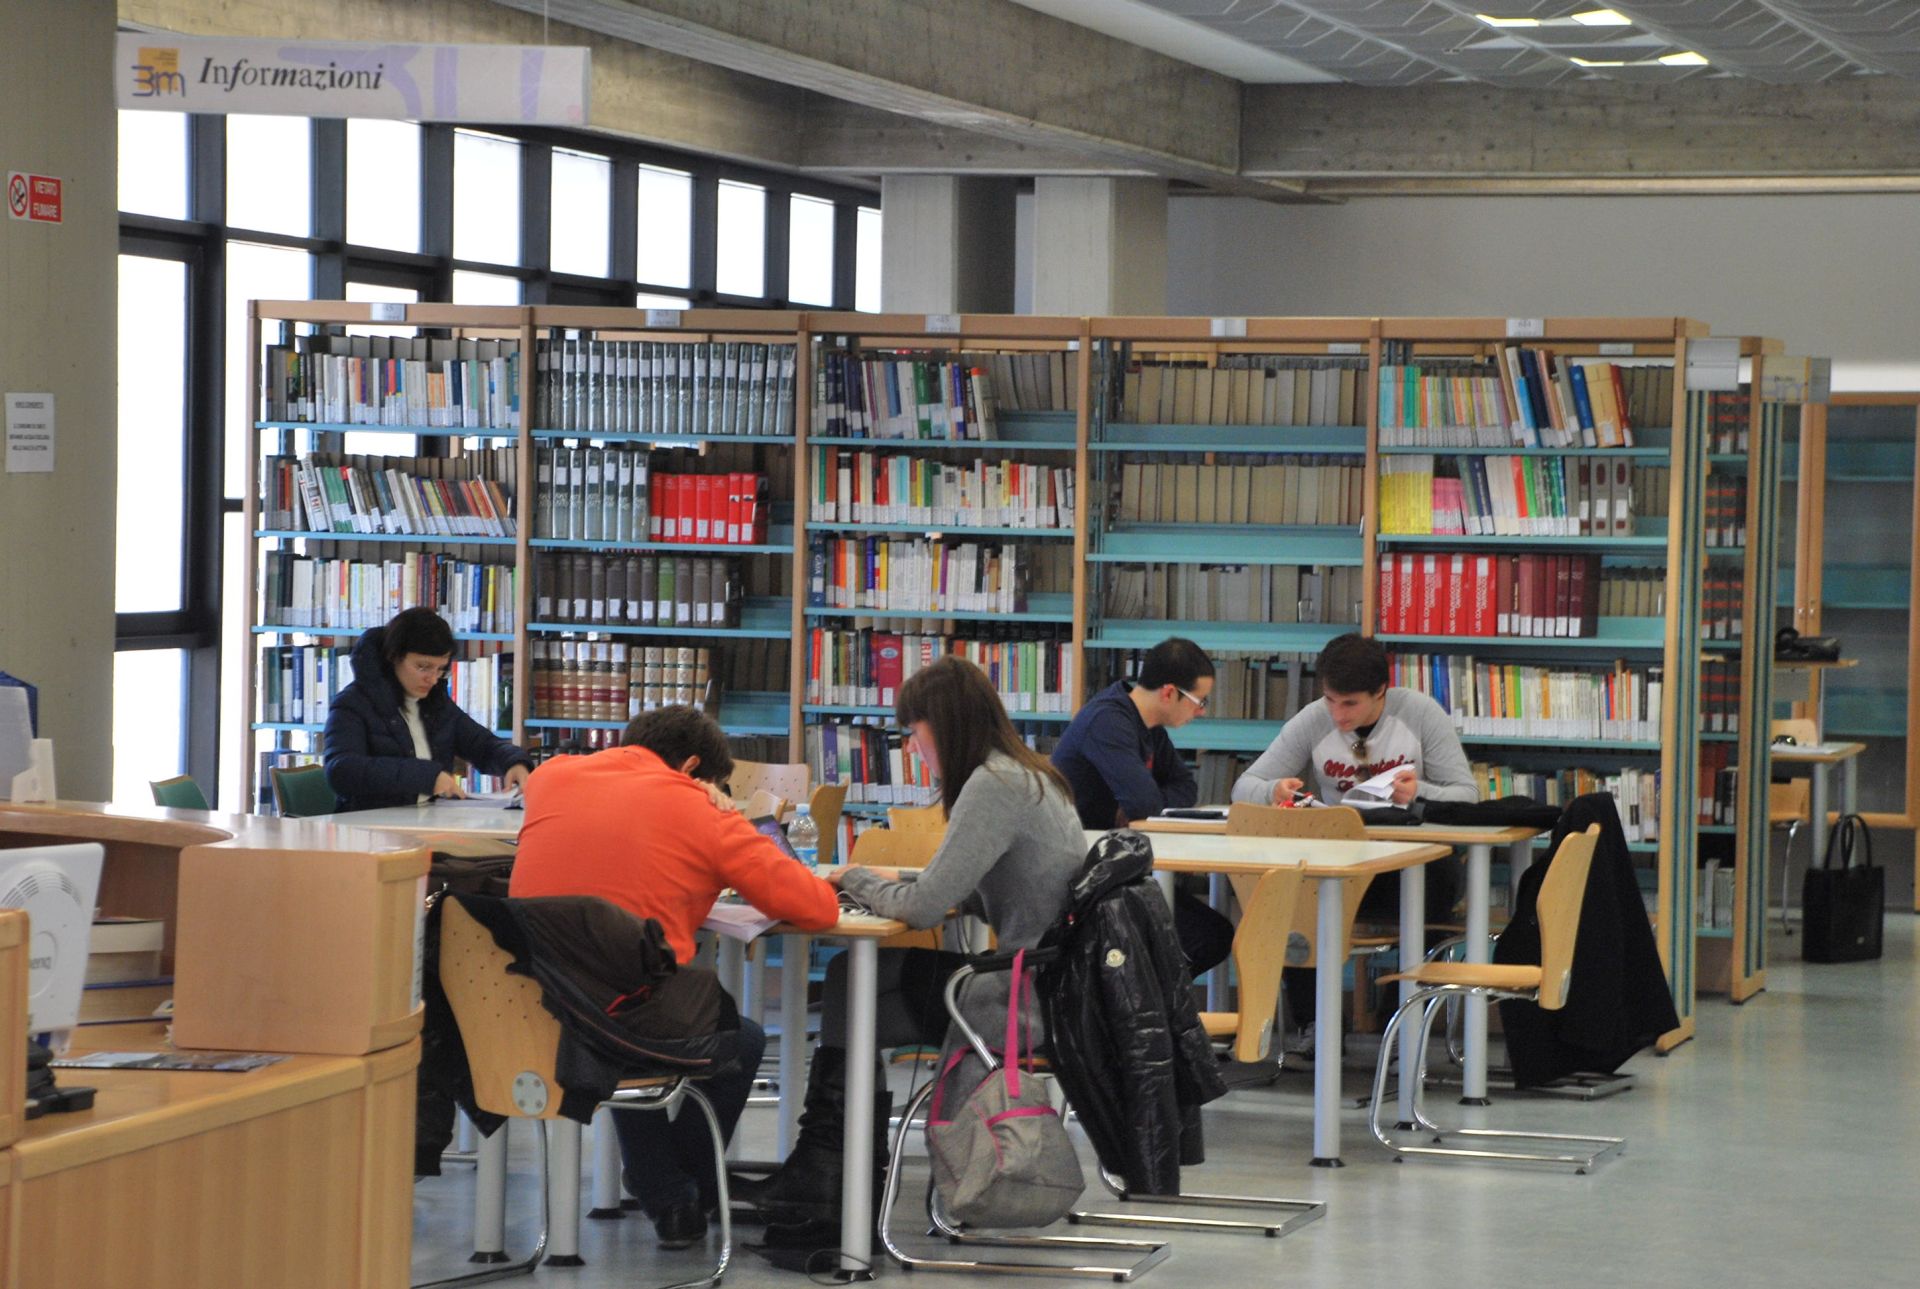 Persone leggono e studiano sui banchi di una biblioteca.